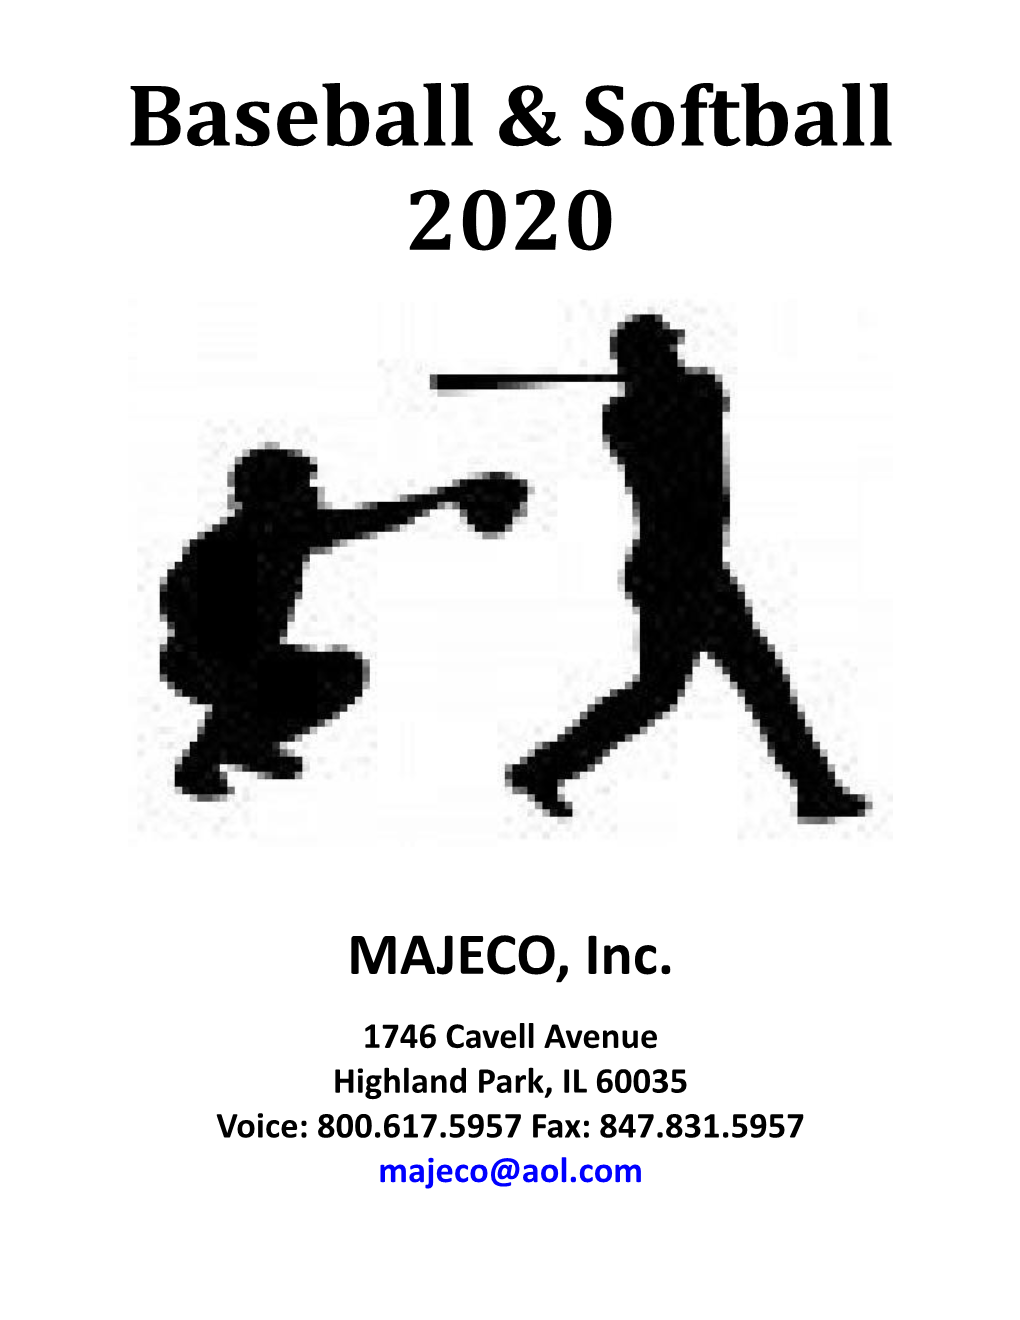 Baseball & Softball 2020